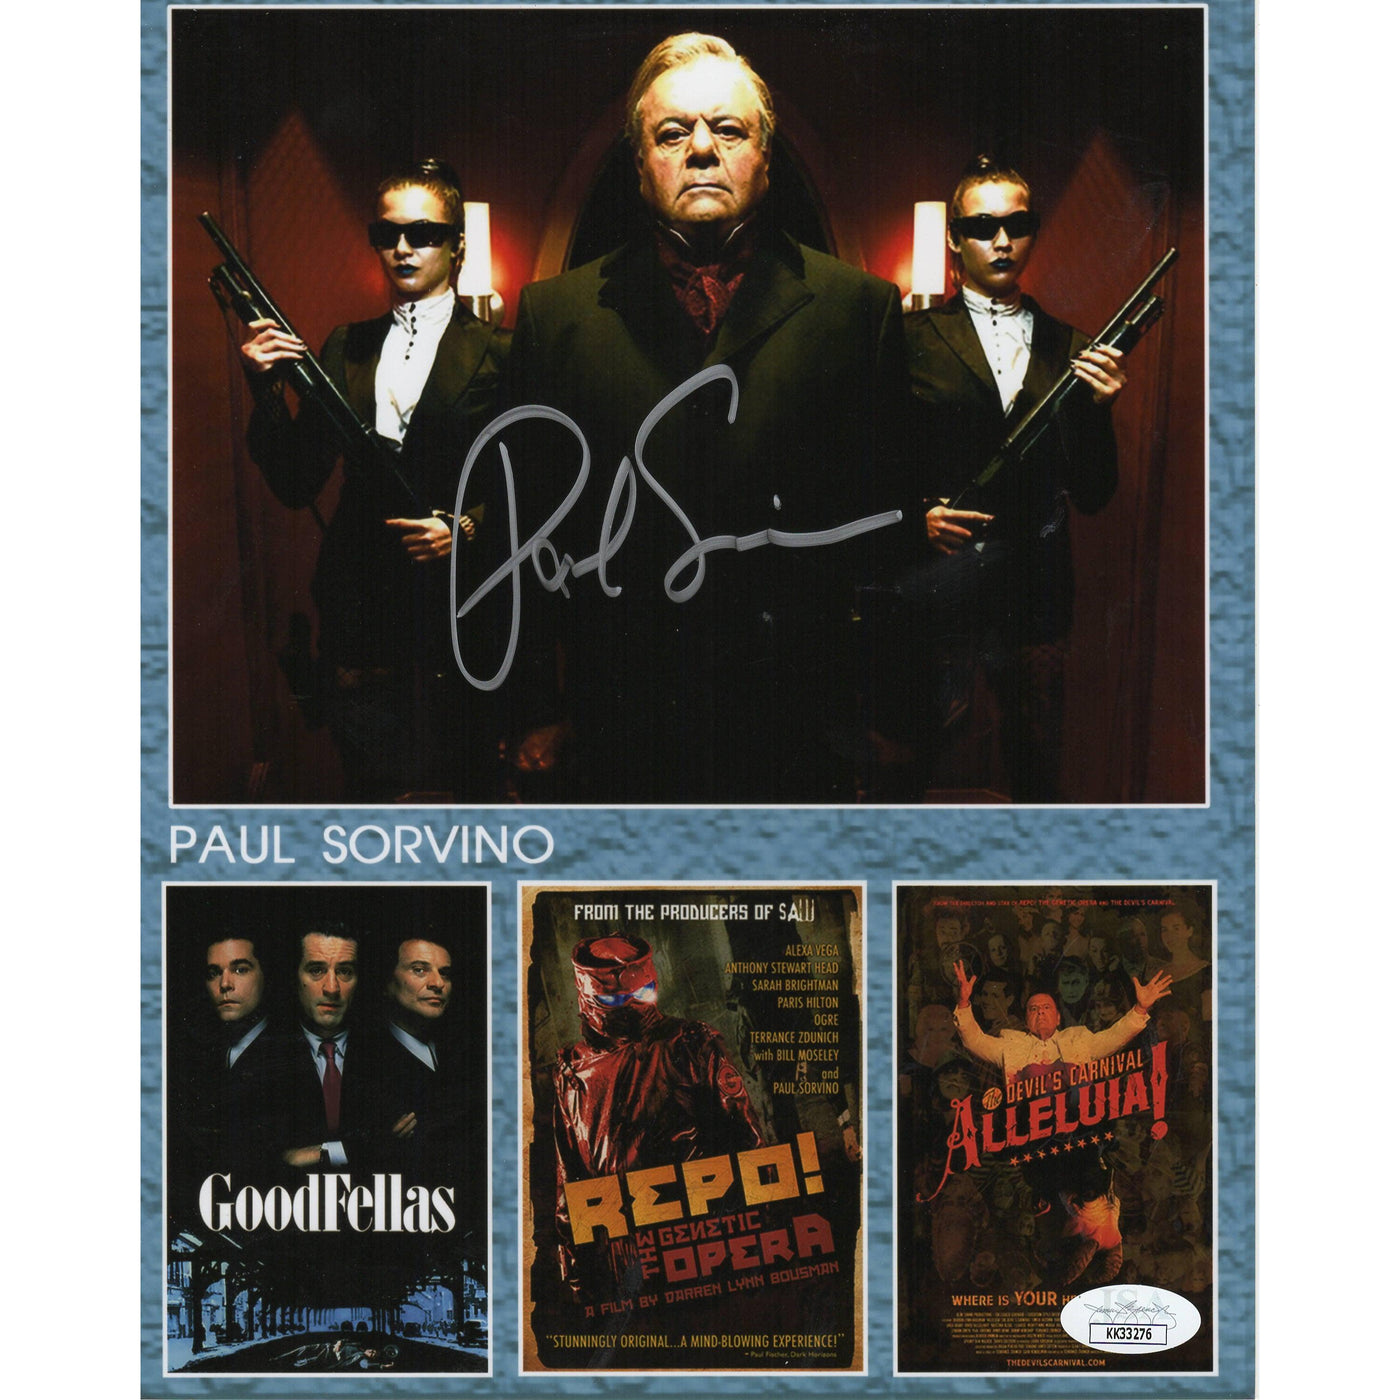 Paul Sorvino Autograph 8x10 Photo Goodfellas Repo! Alleluia Signed JSA COA